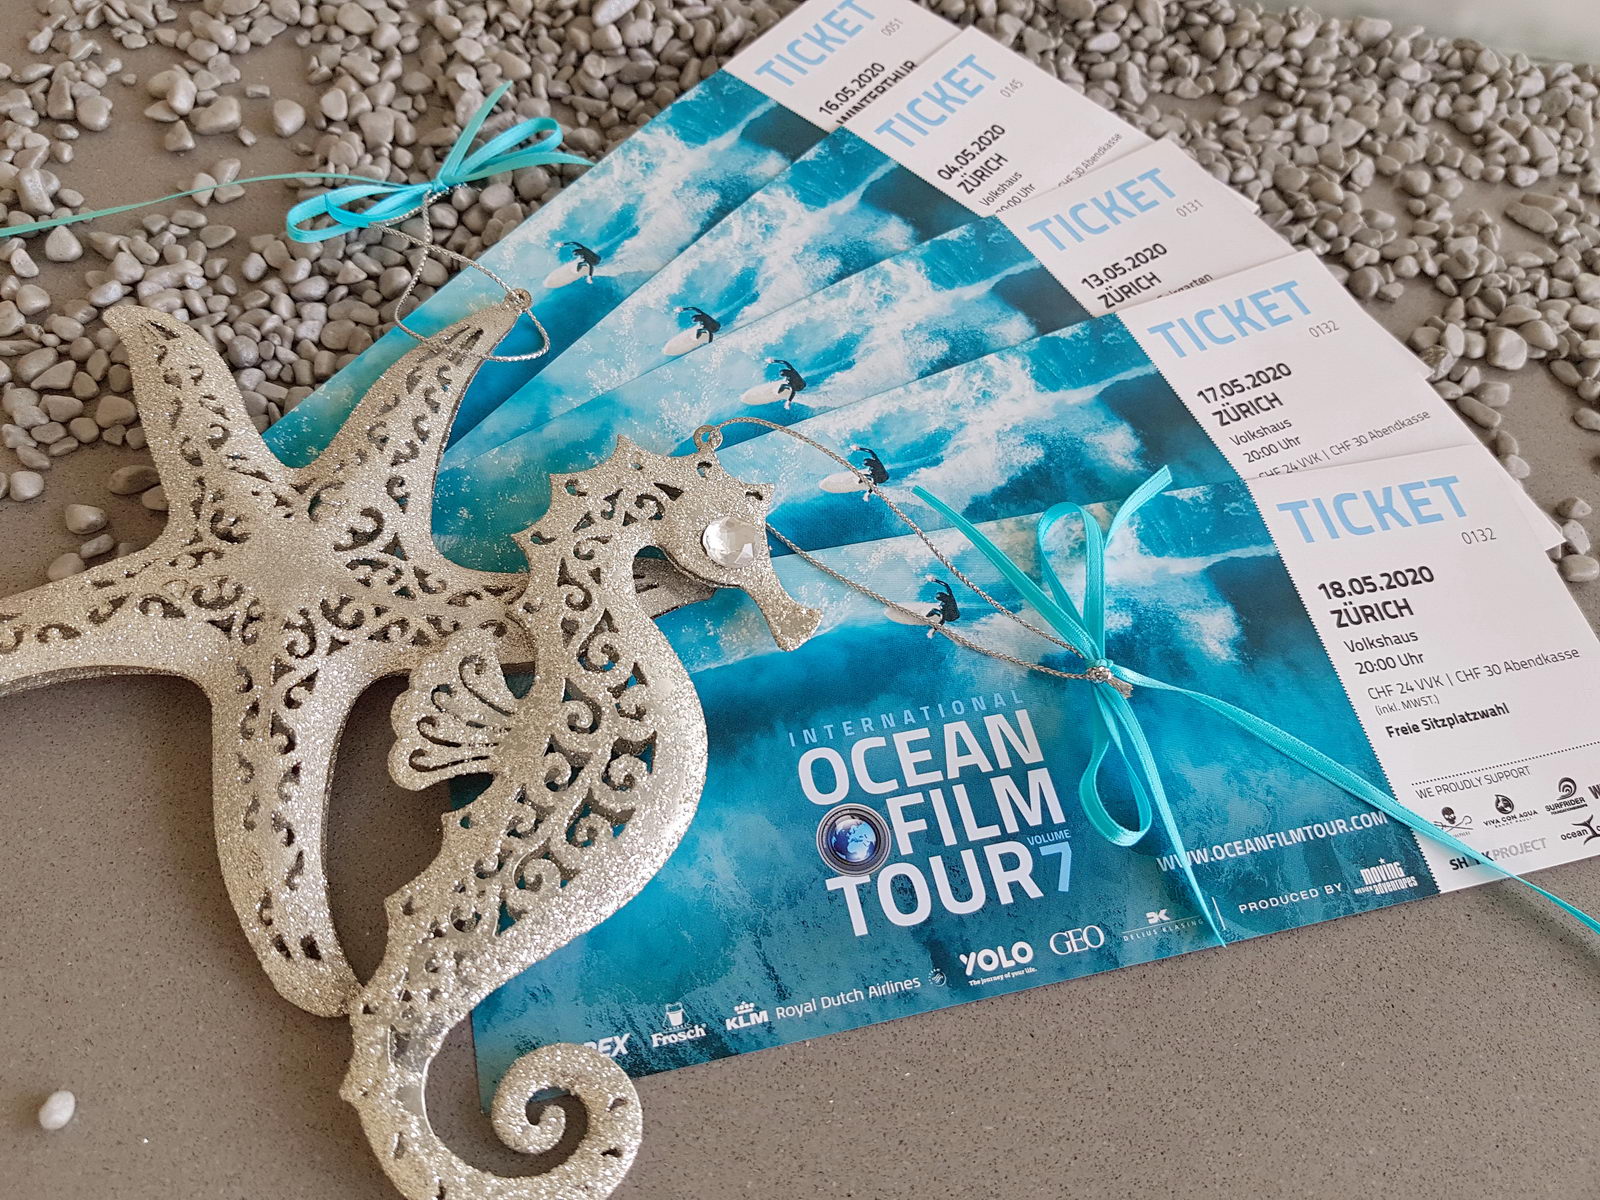 Ocean Film Tour Ticket